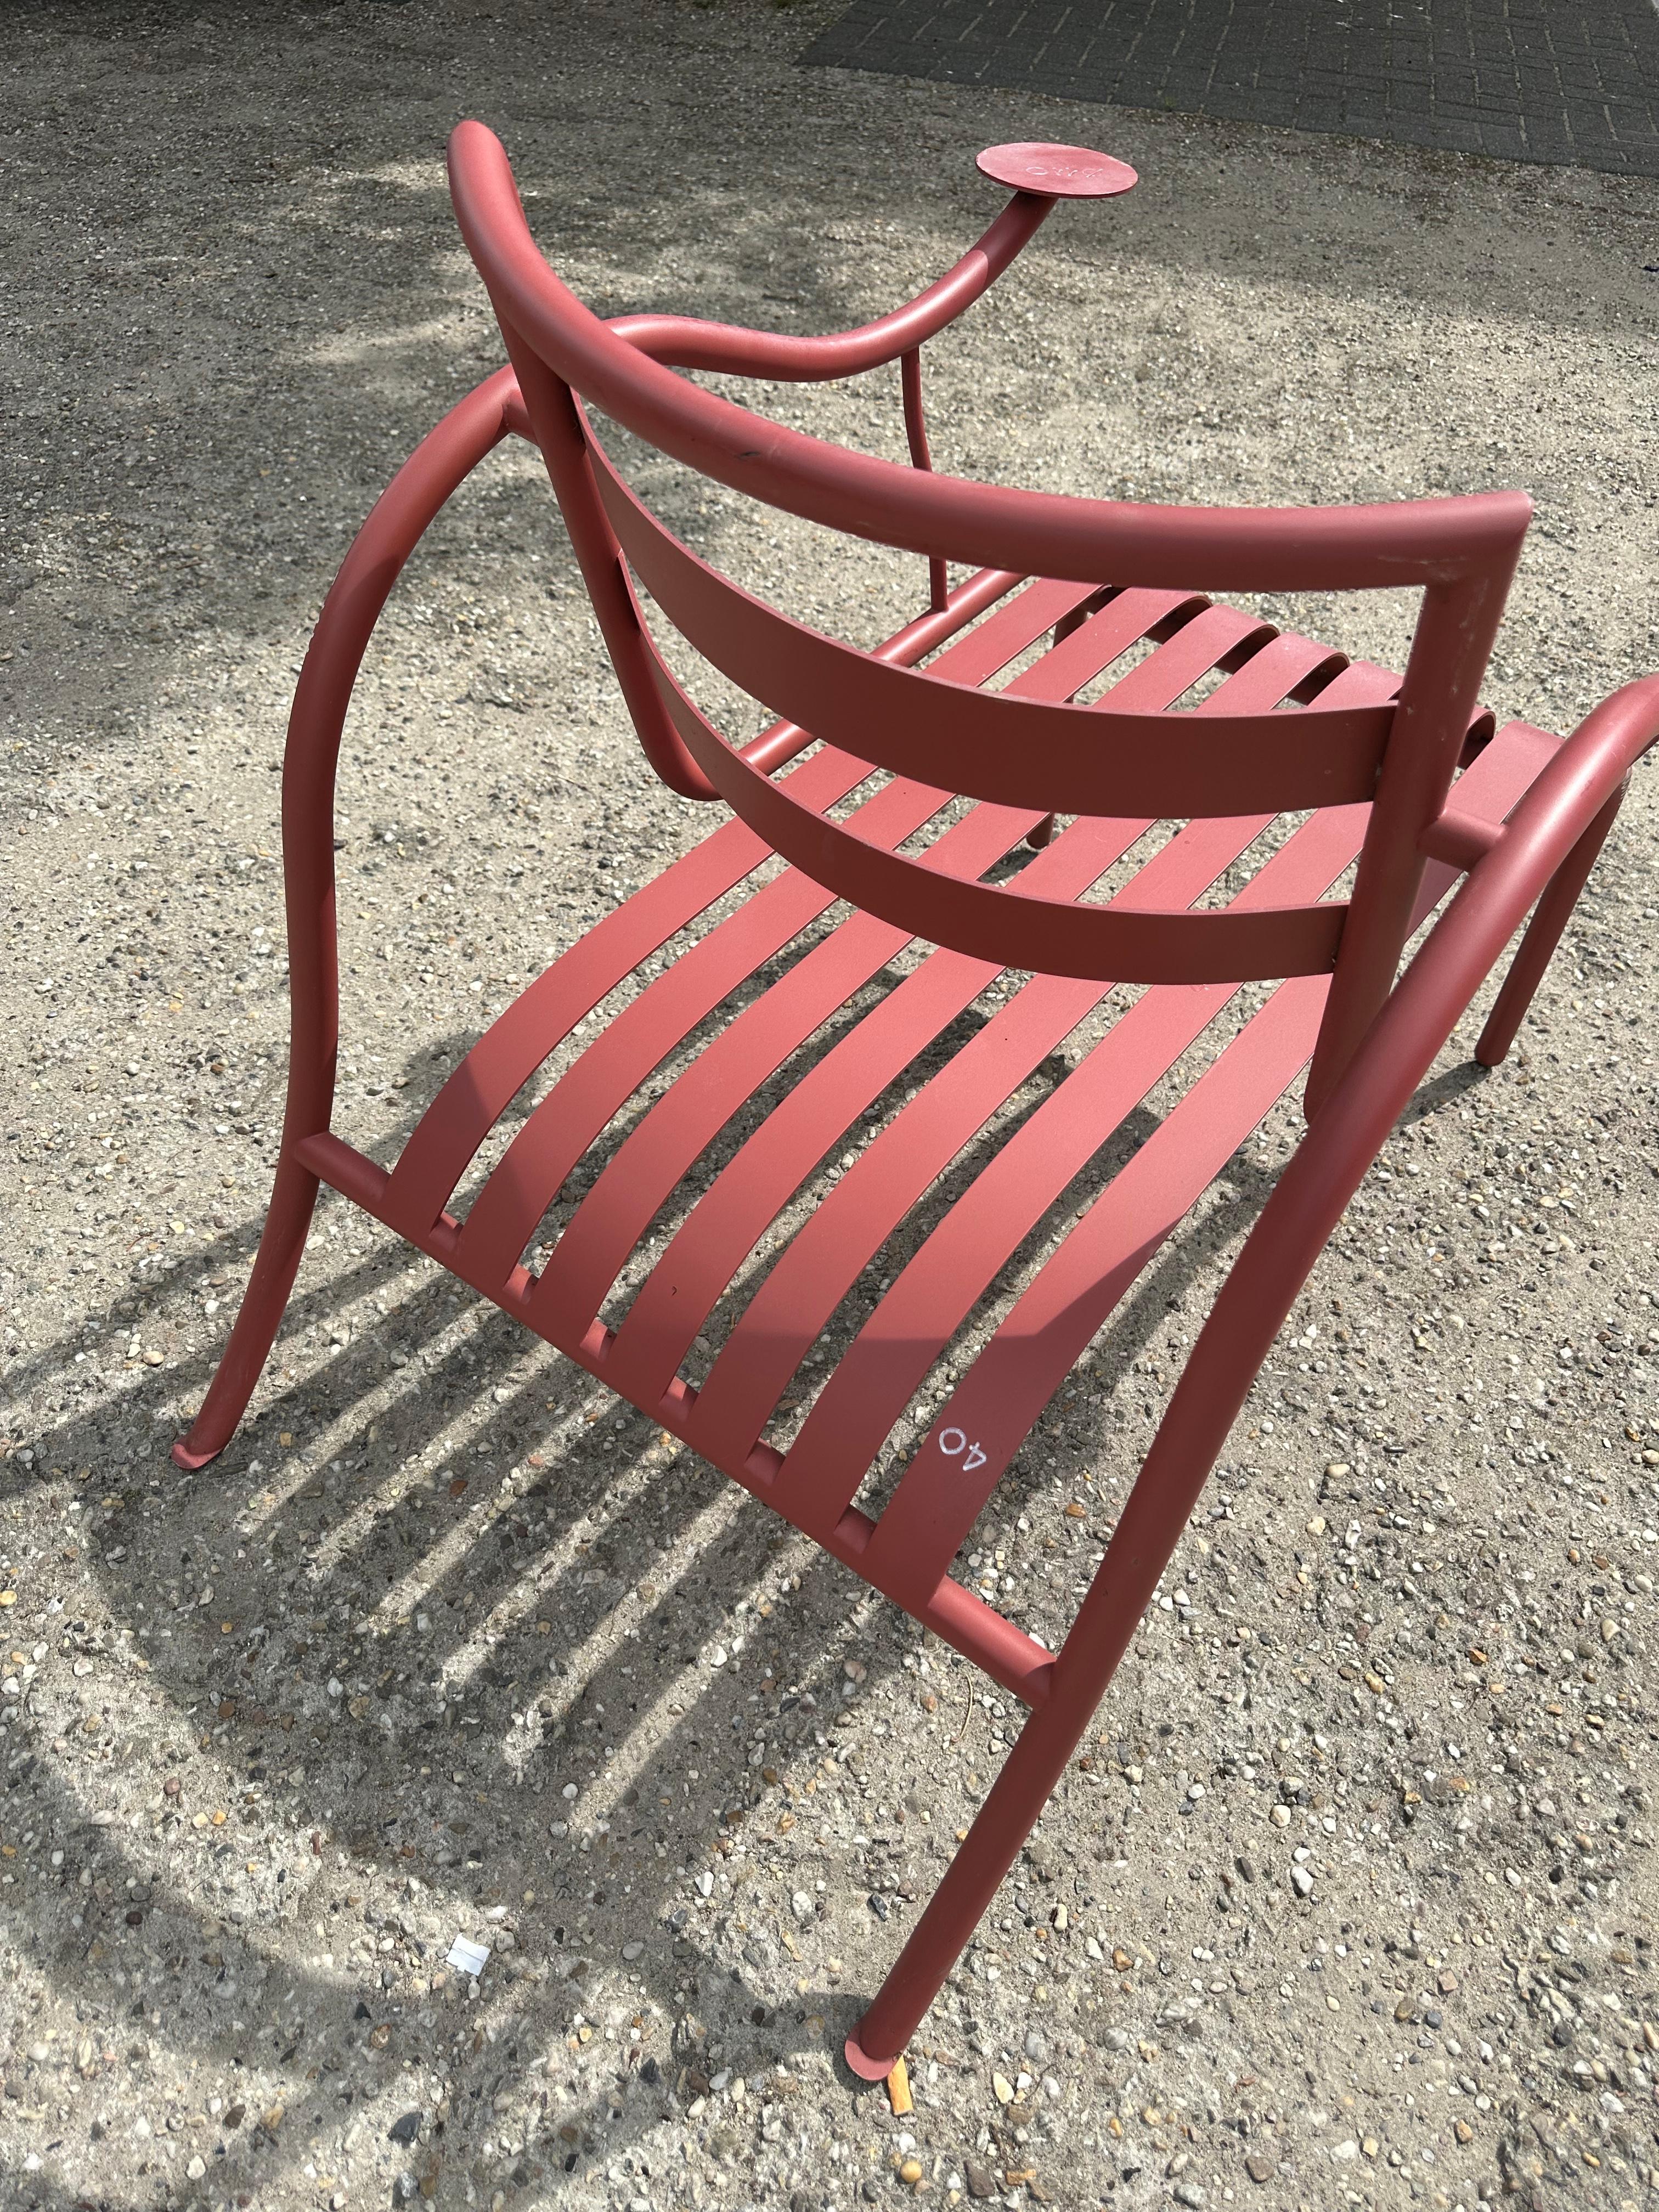 Der Thinking Man Chair ist ein Sessel, der 1988 vom Designer Jasper Morrison für Cappellini entworfen wurde. Der Stuhl besteht aus einem Rohrgestell, dessen Sitzfläche und Rückenlehne aus Metallbändern geformt sind, die ein bequemes Sitzen